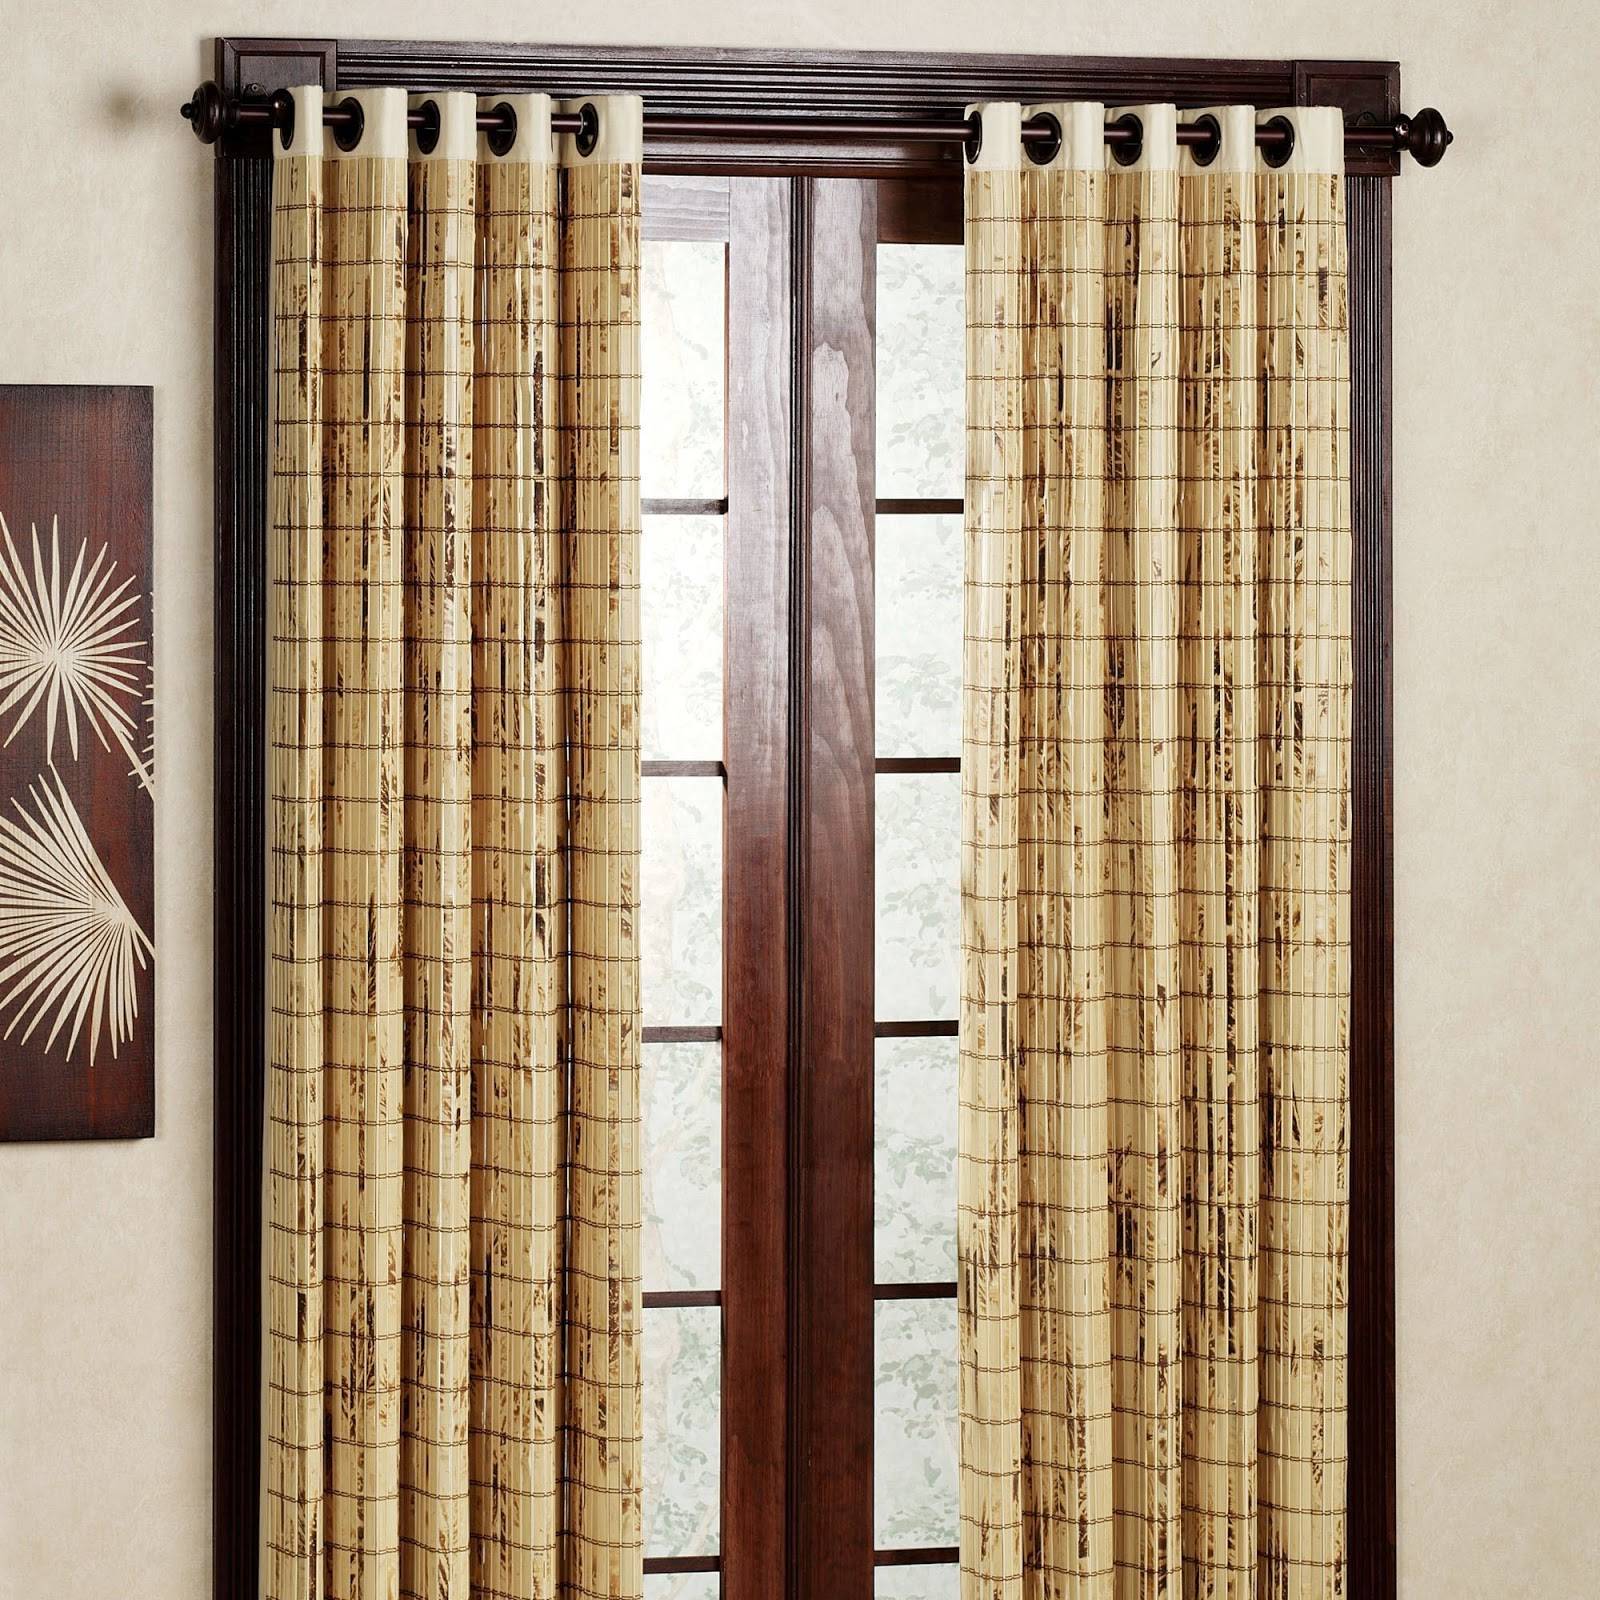 Валберис бамбуковые шторы. Бамбуковые шторы на дверь. Шторы на дверной проем. Деревянные занавески. Декоративная шторка